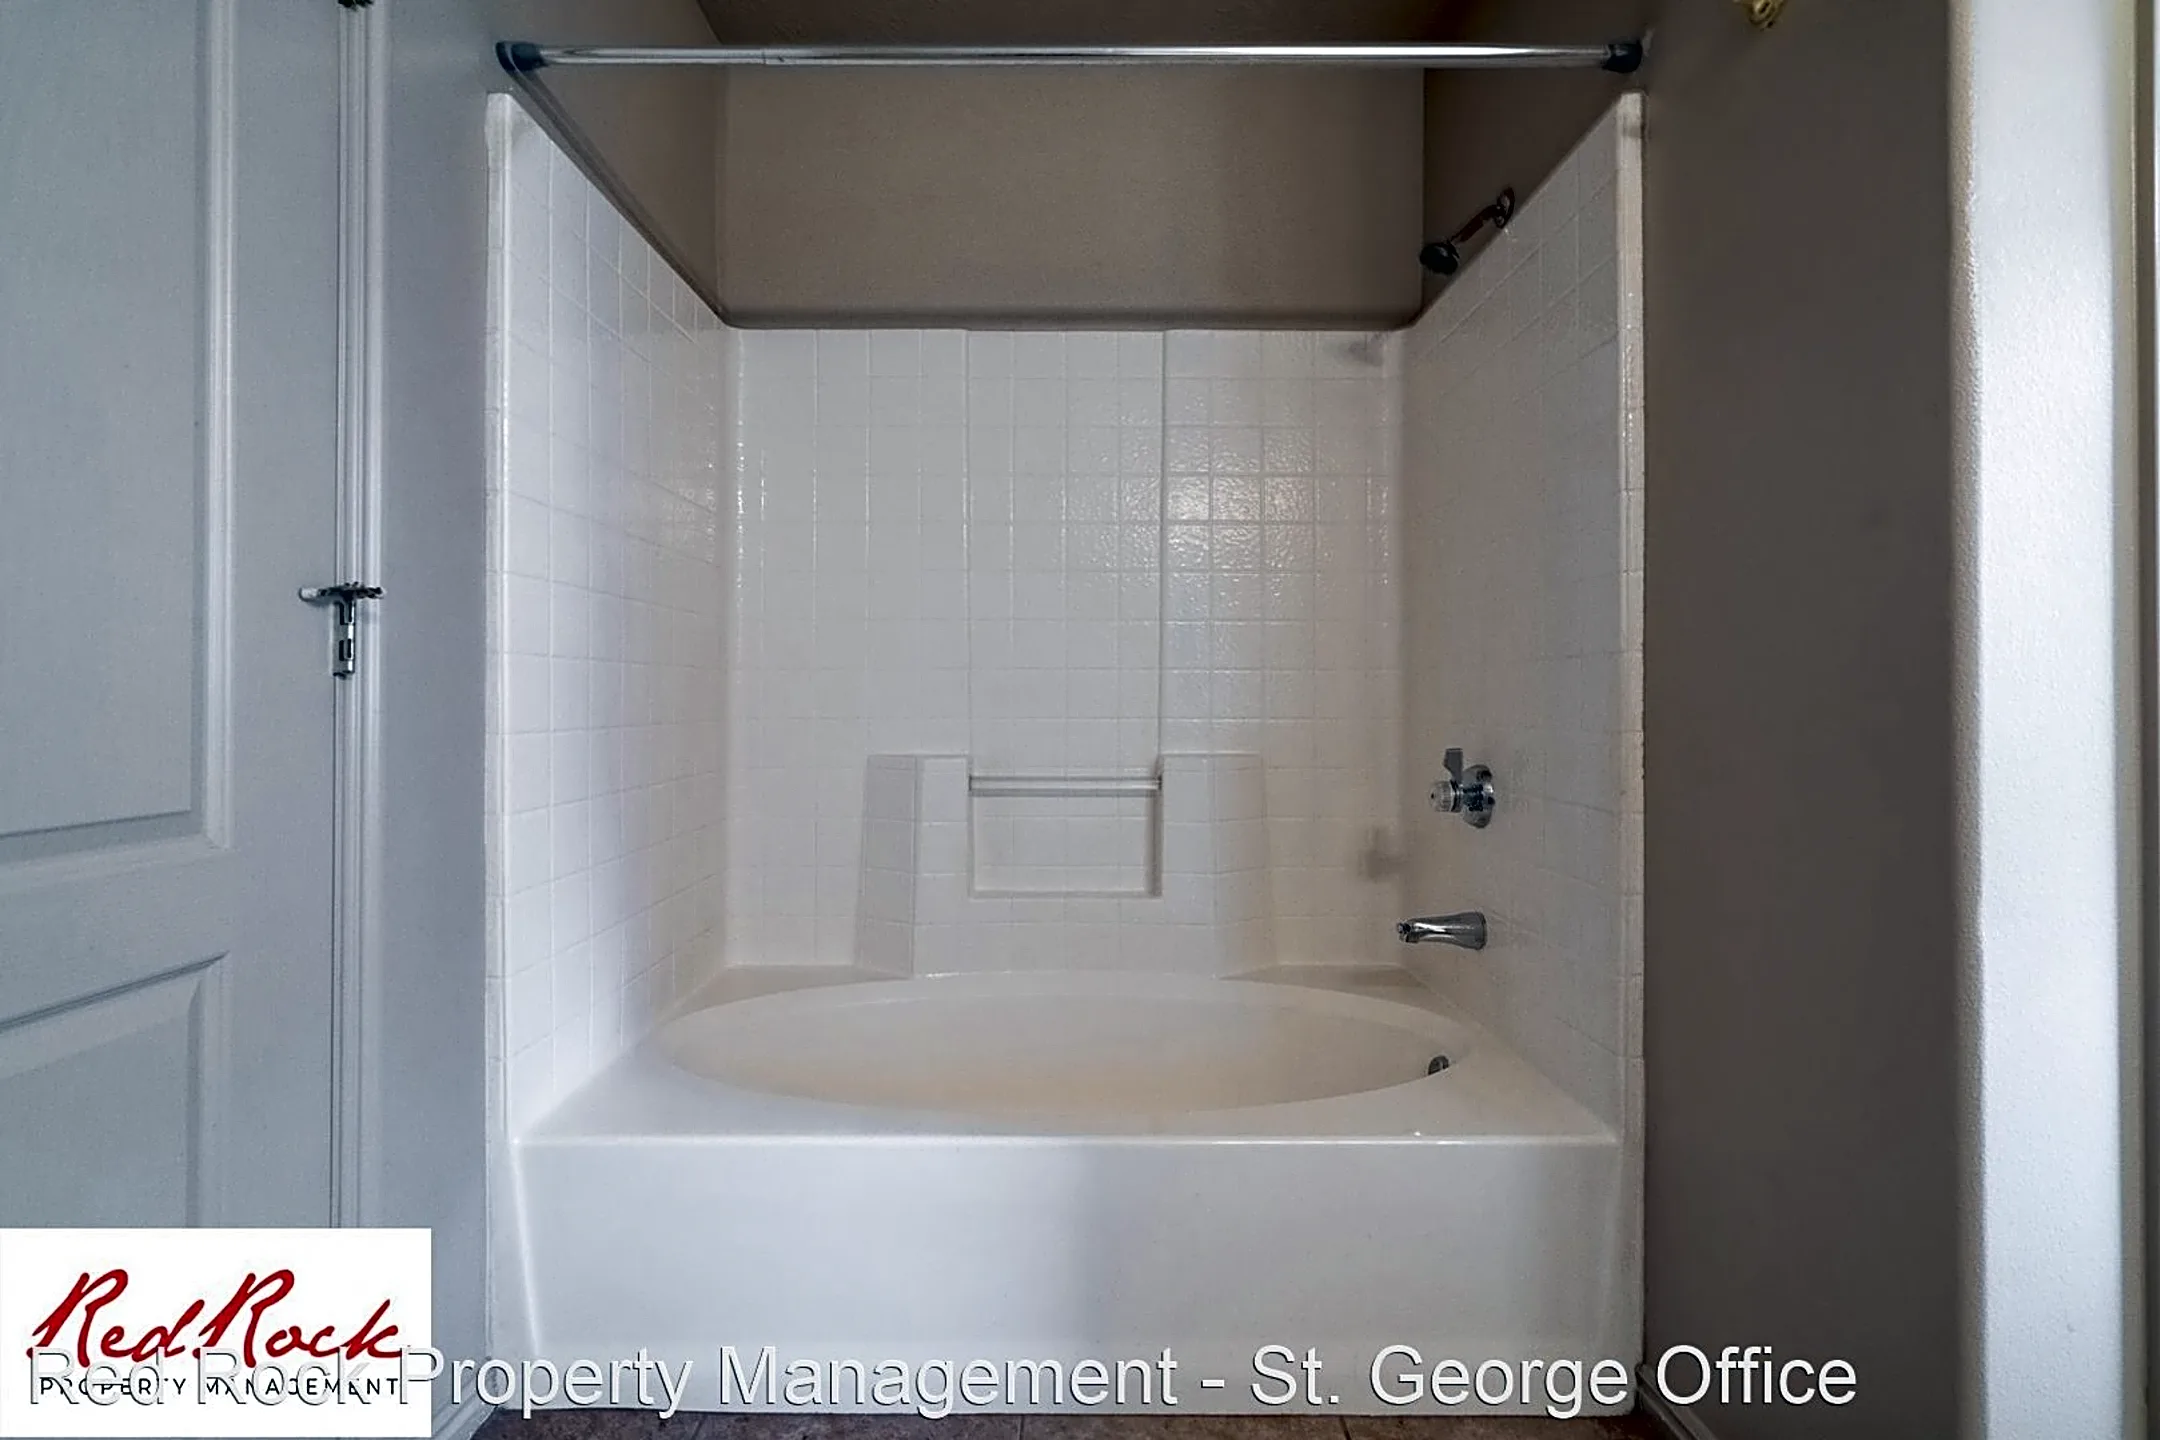 Bathroom - 1178 E 300 S - Saint George, UT